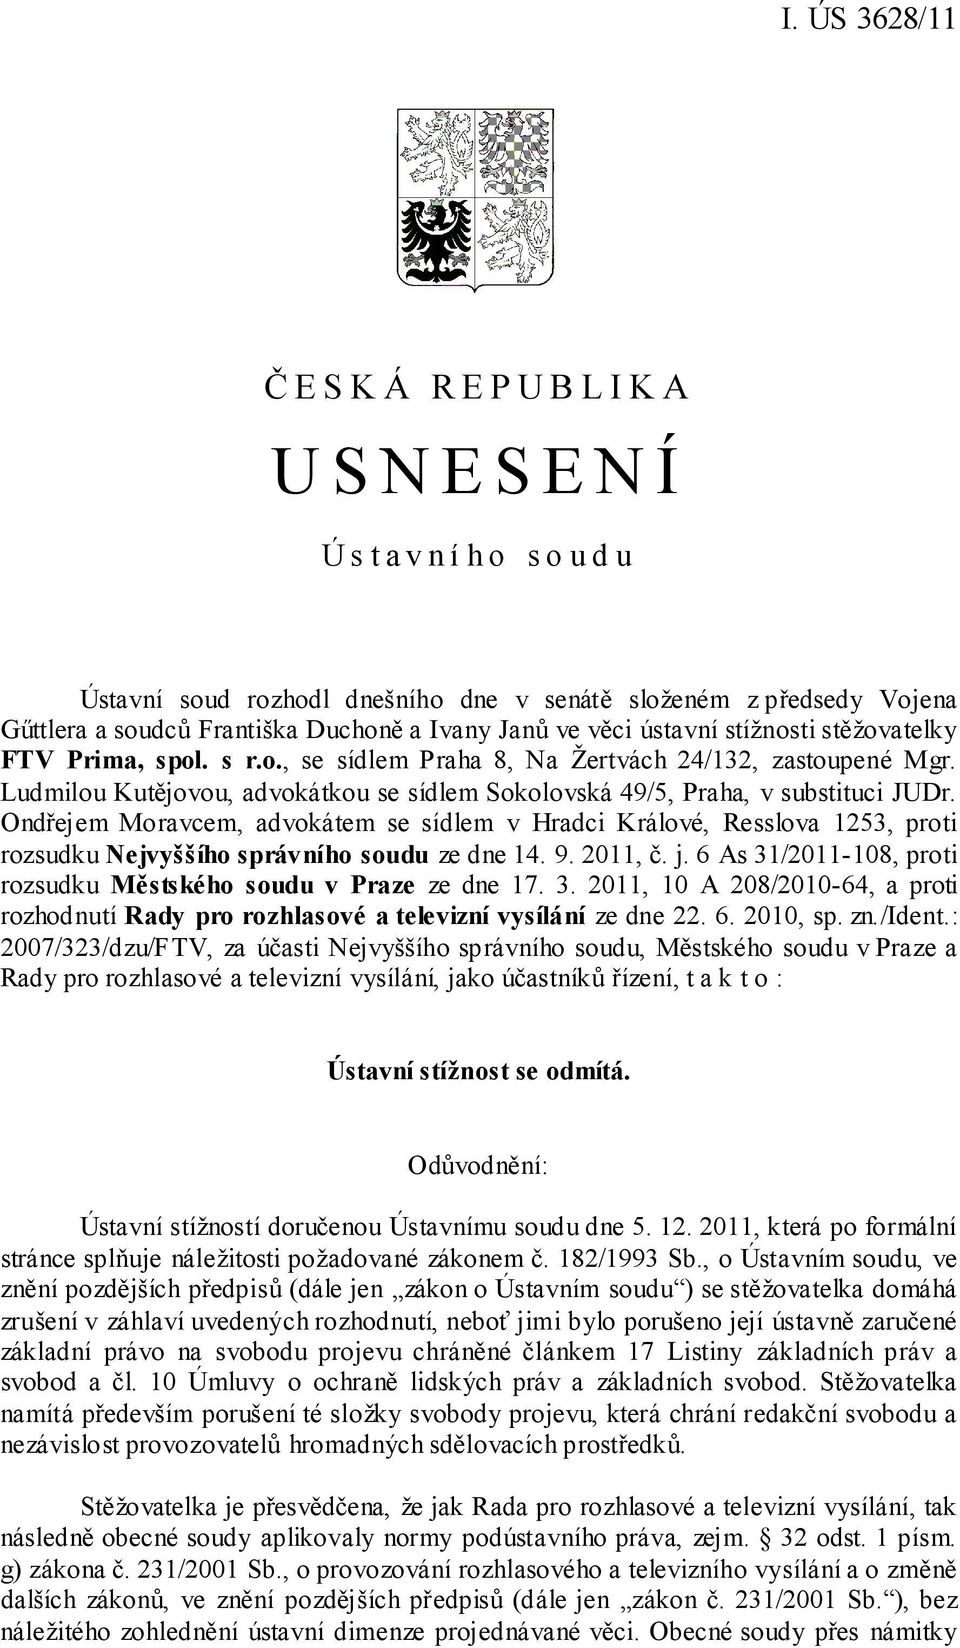 Ondřejem Moravcem, advokátem se sídlem v Hradci Králové, Resslova 1253, proti rozsudku Nejvyššího správního soudu ze dne 14. 9. 2011, č. j.